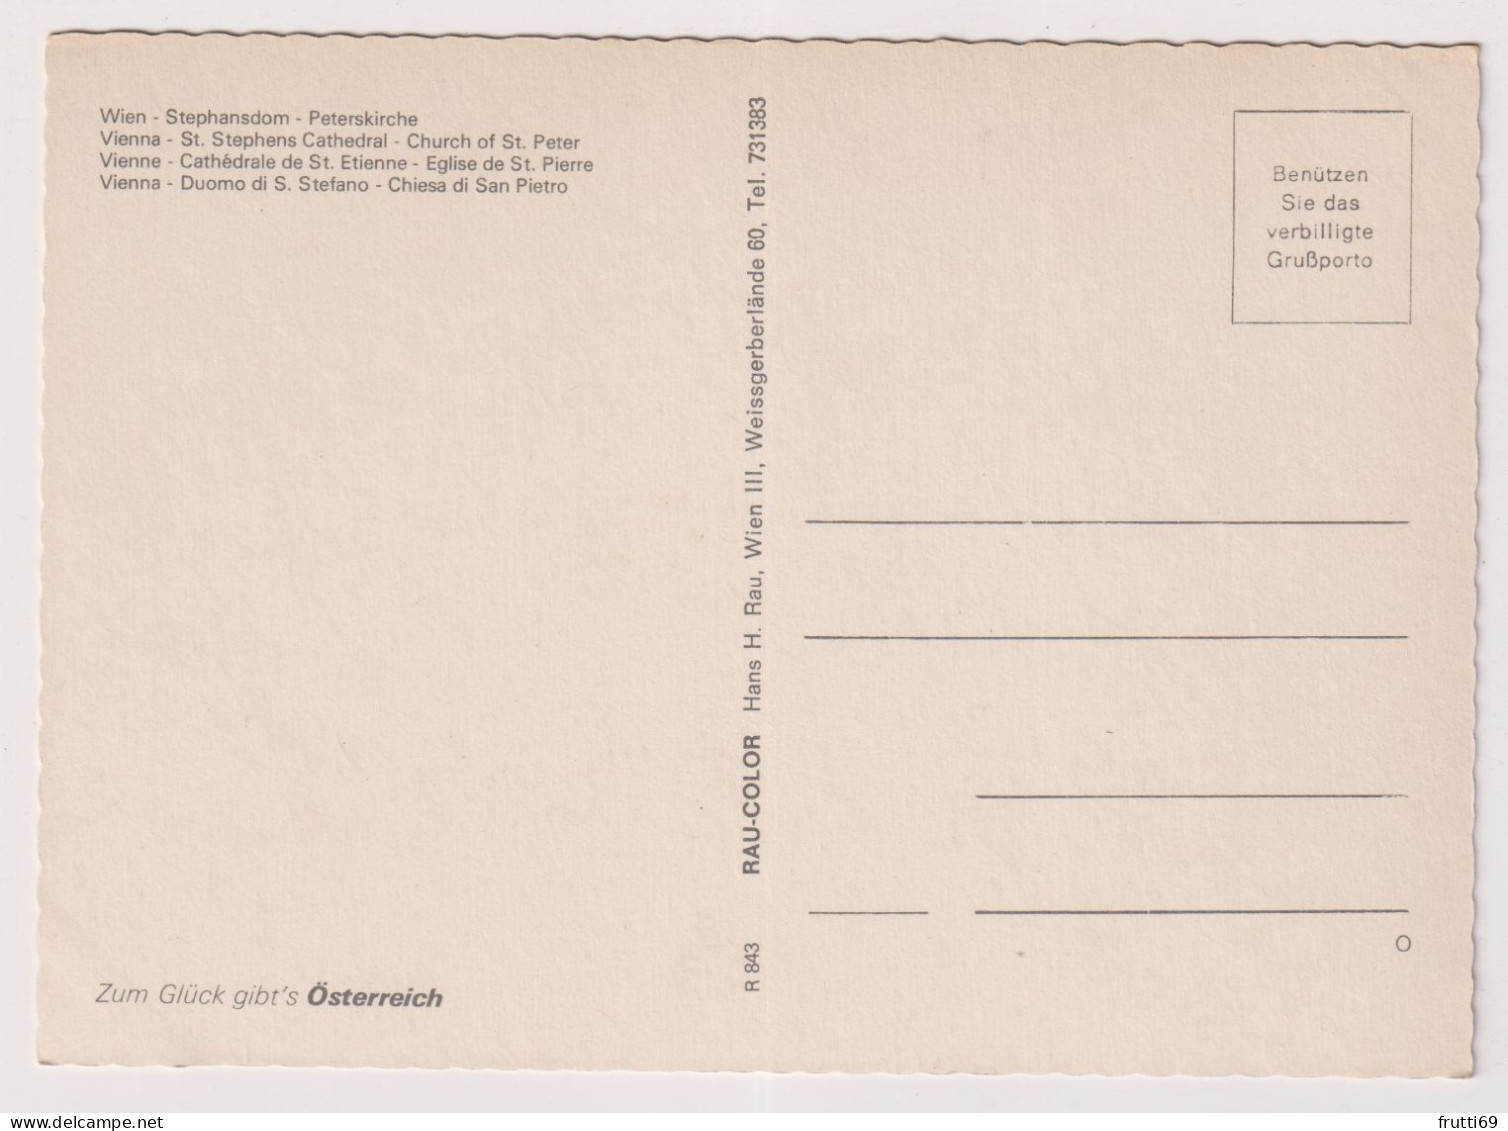 AK 198905 AUSTRIA - Wien - Stephansdom - Peterskirche - Iglesias